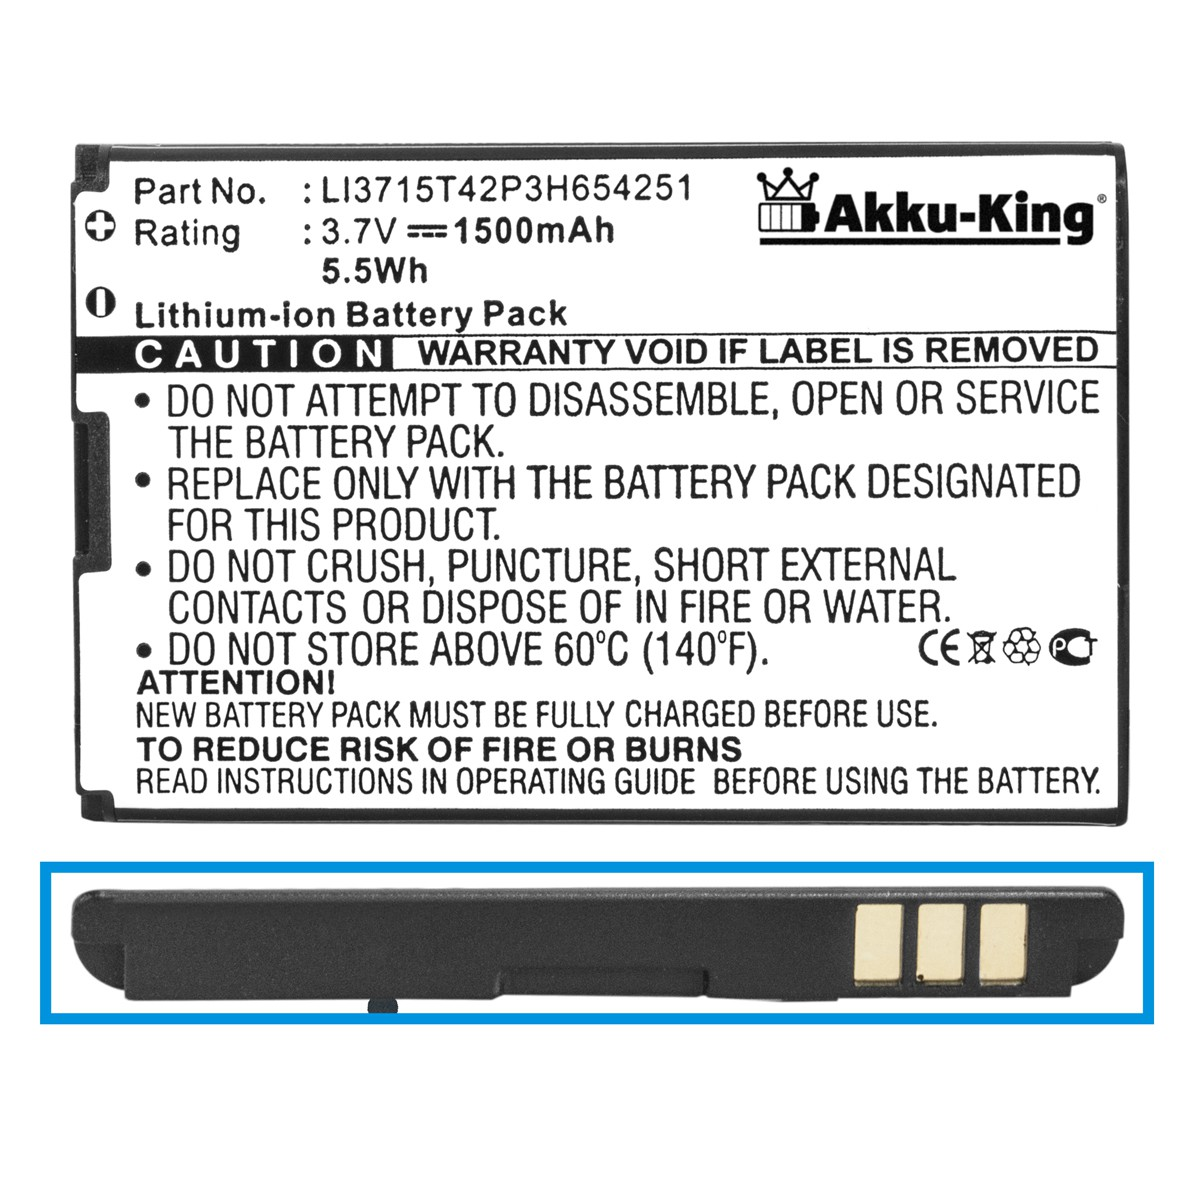 Volt, 3.7 LI3715T42P3H654251 1500mAh Li-Ion Akku mit AKKU-KING kompatibel Vodafone Handy-Akku,